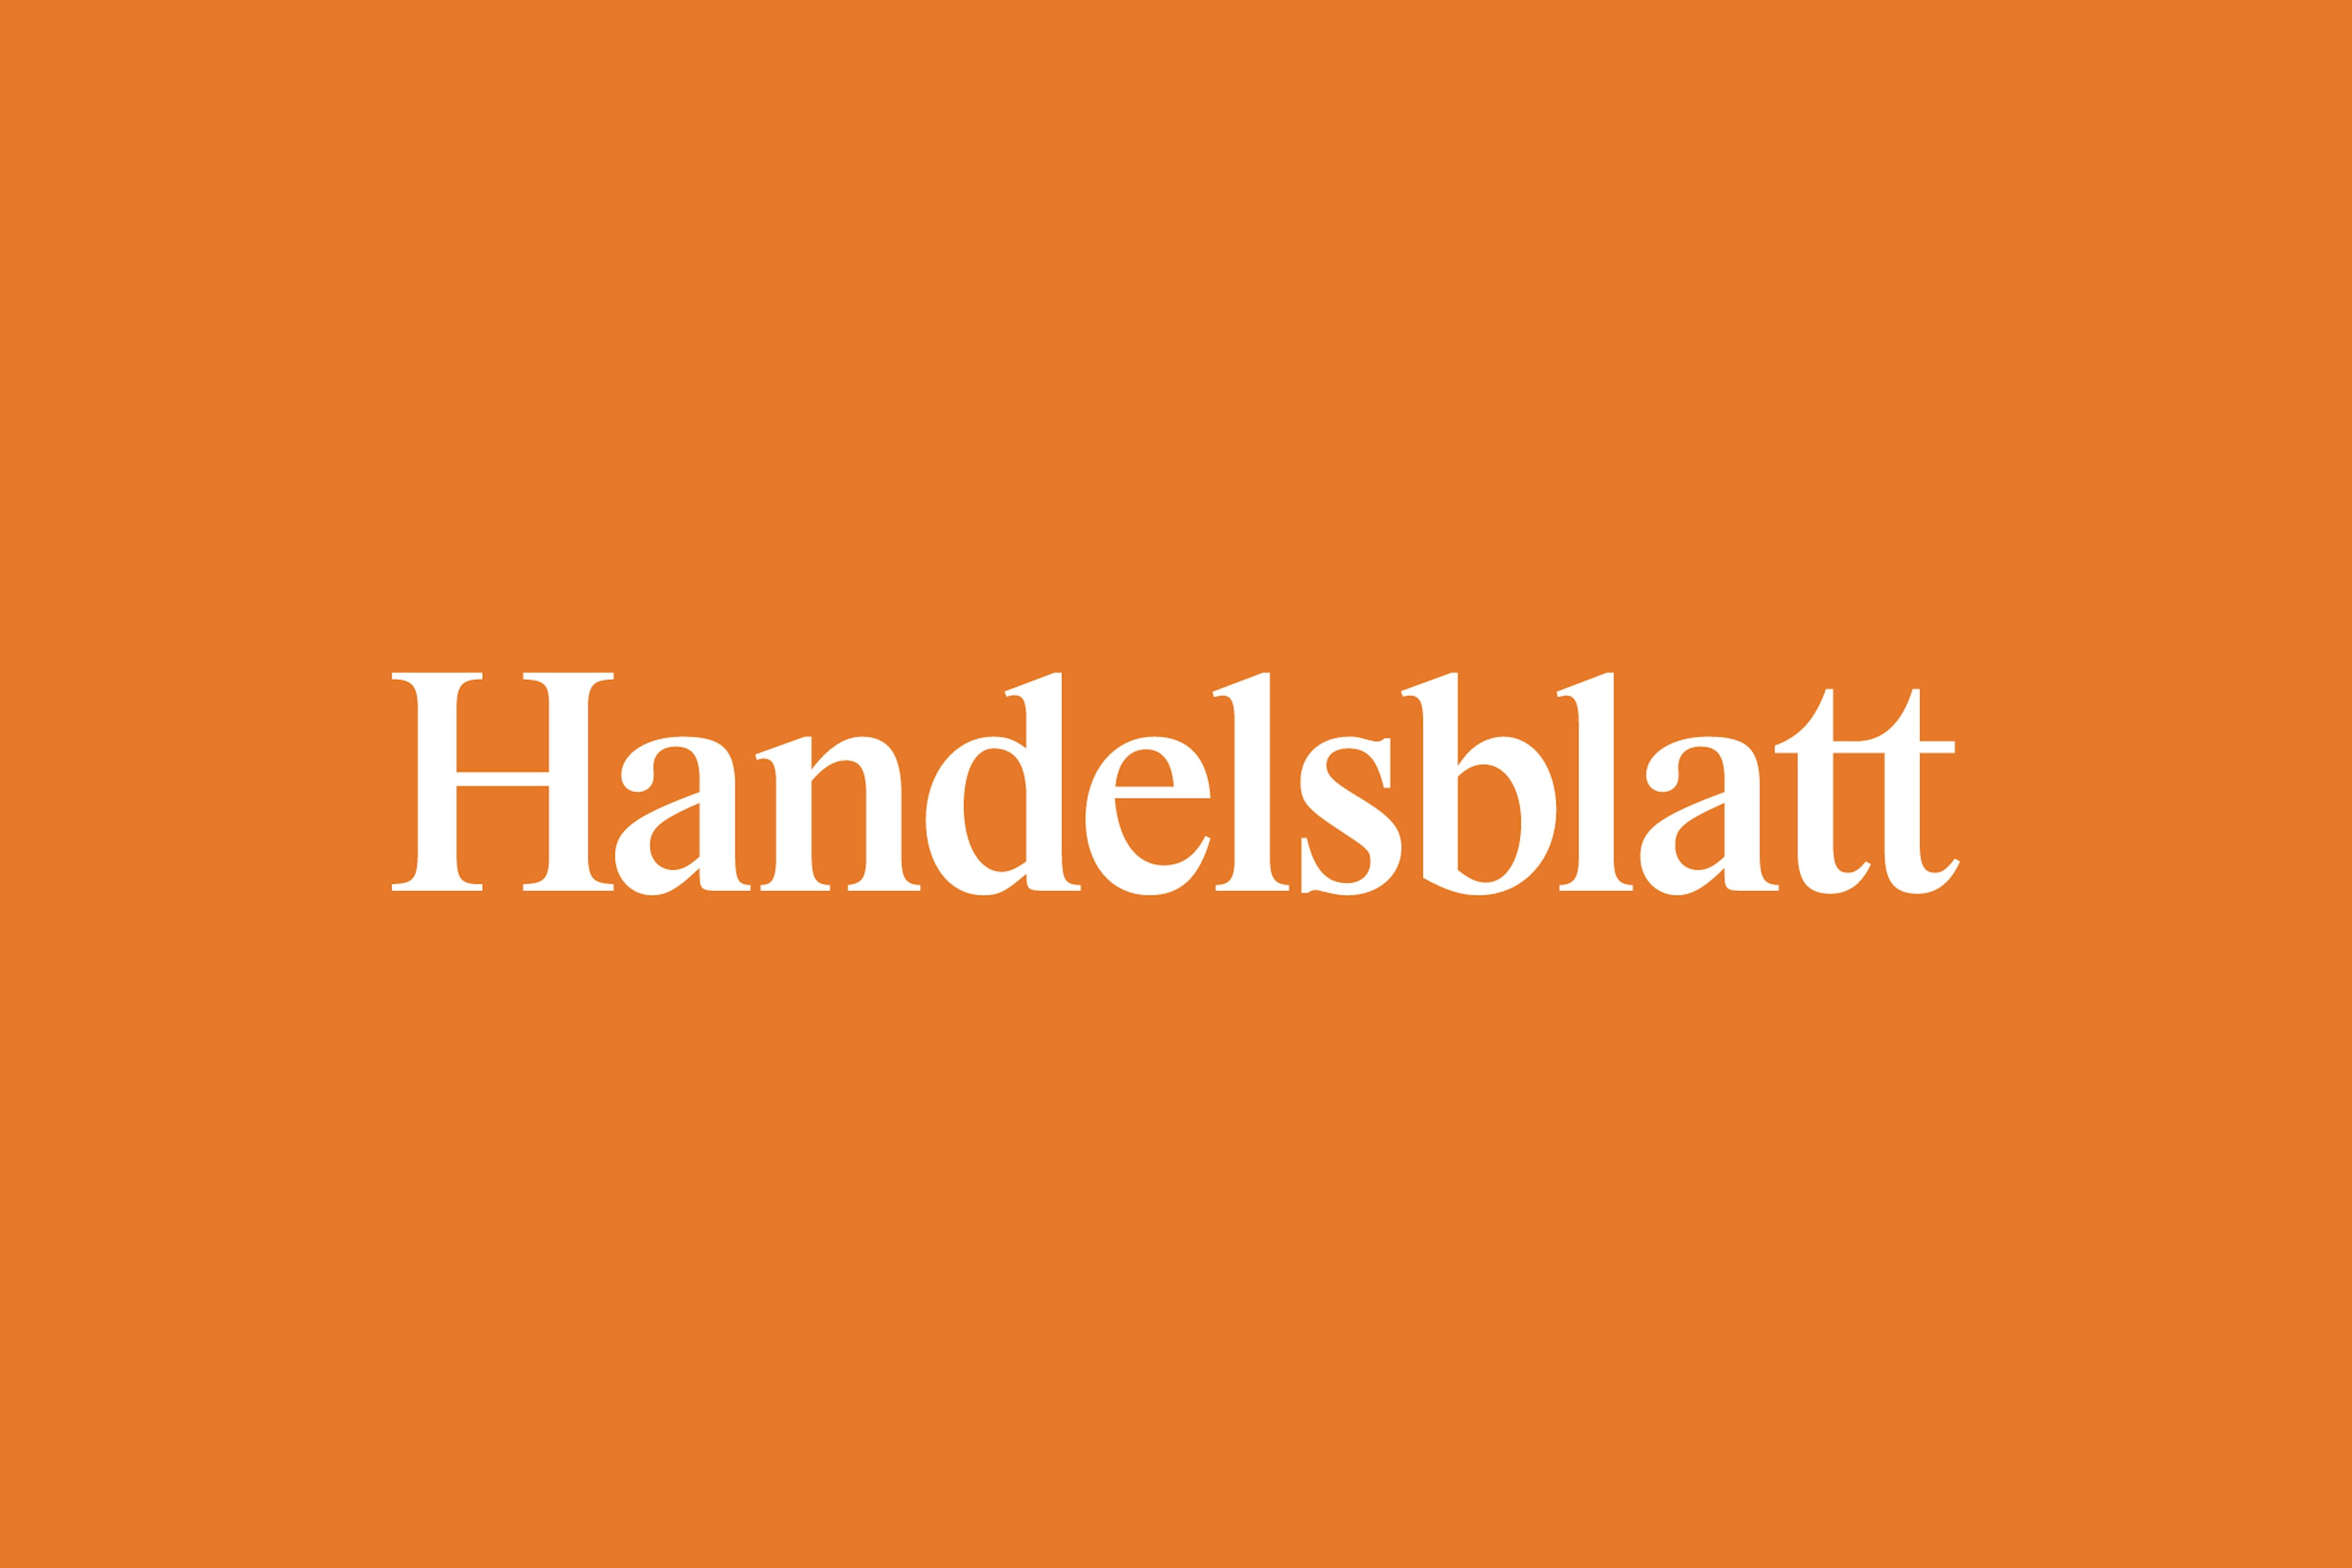 Logo of newspaper Handelsblatt